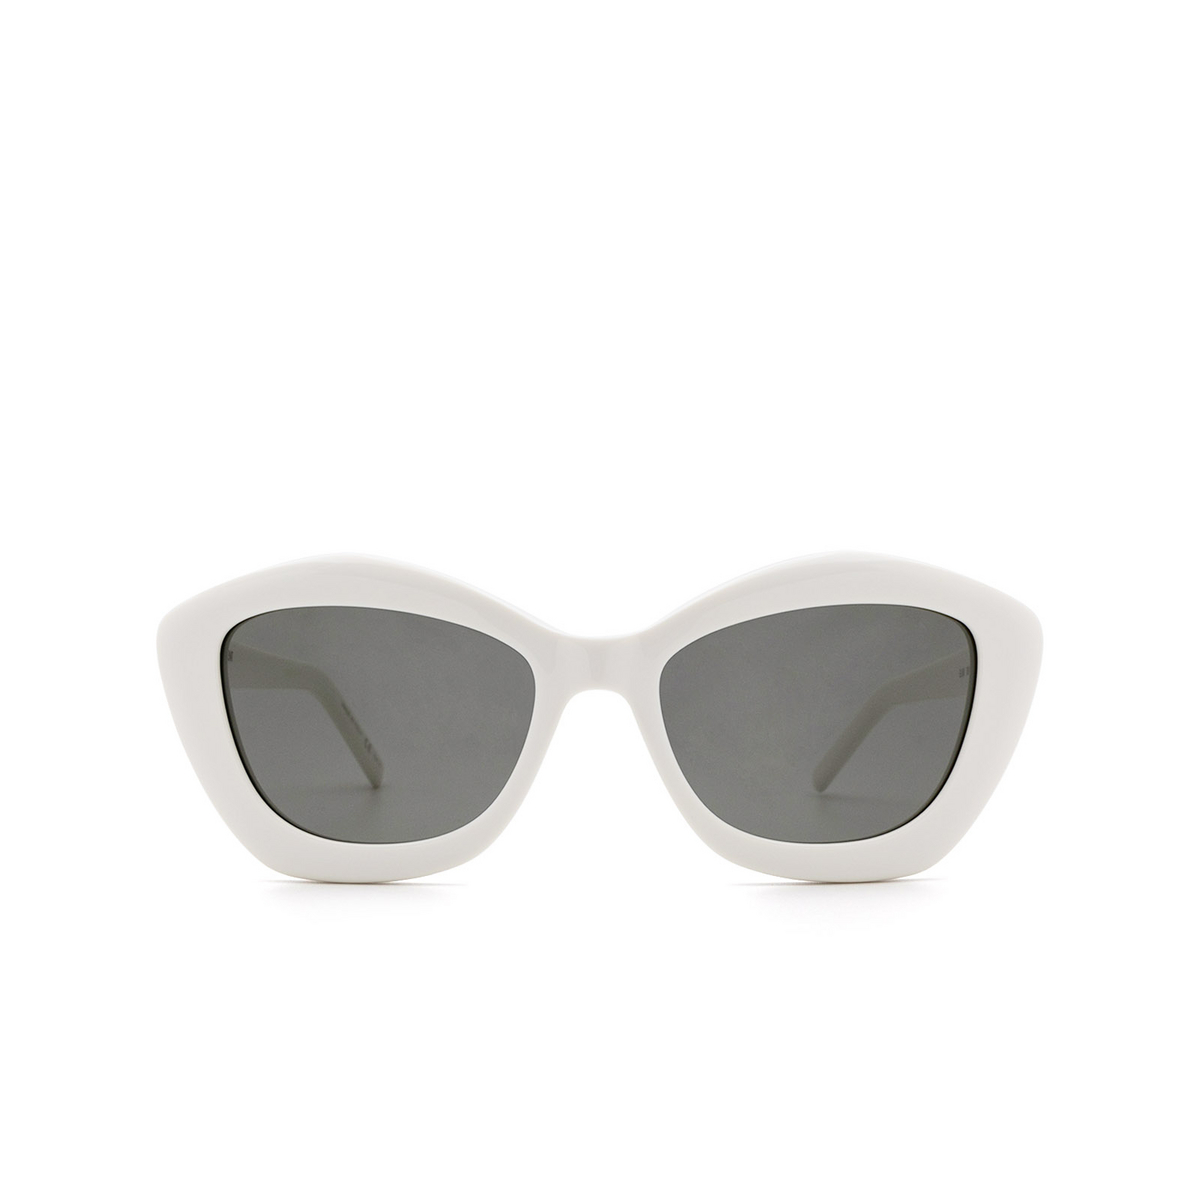 Saint Laurent® Sunglasses: SL 68 color Ivory 004 - front view.